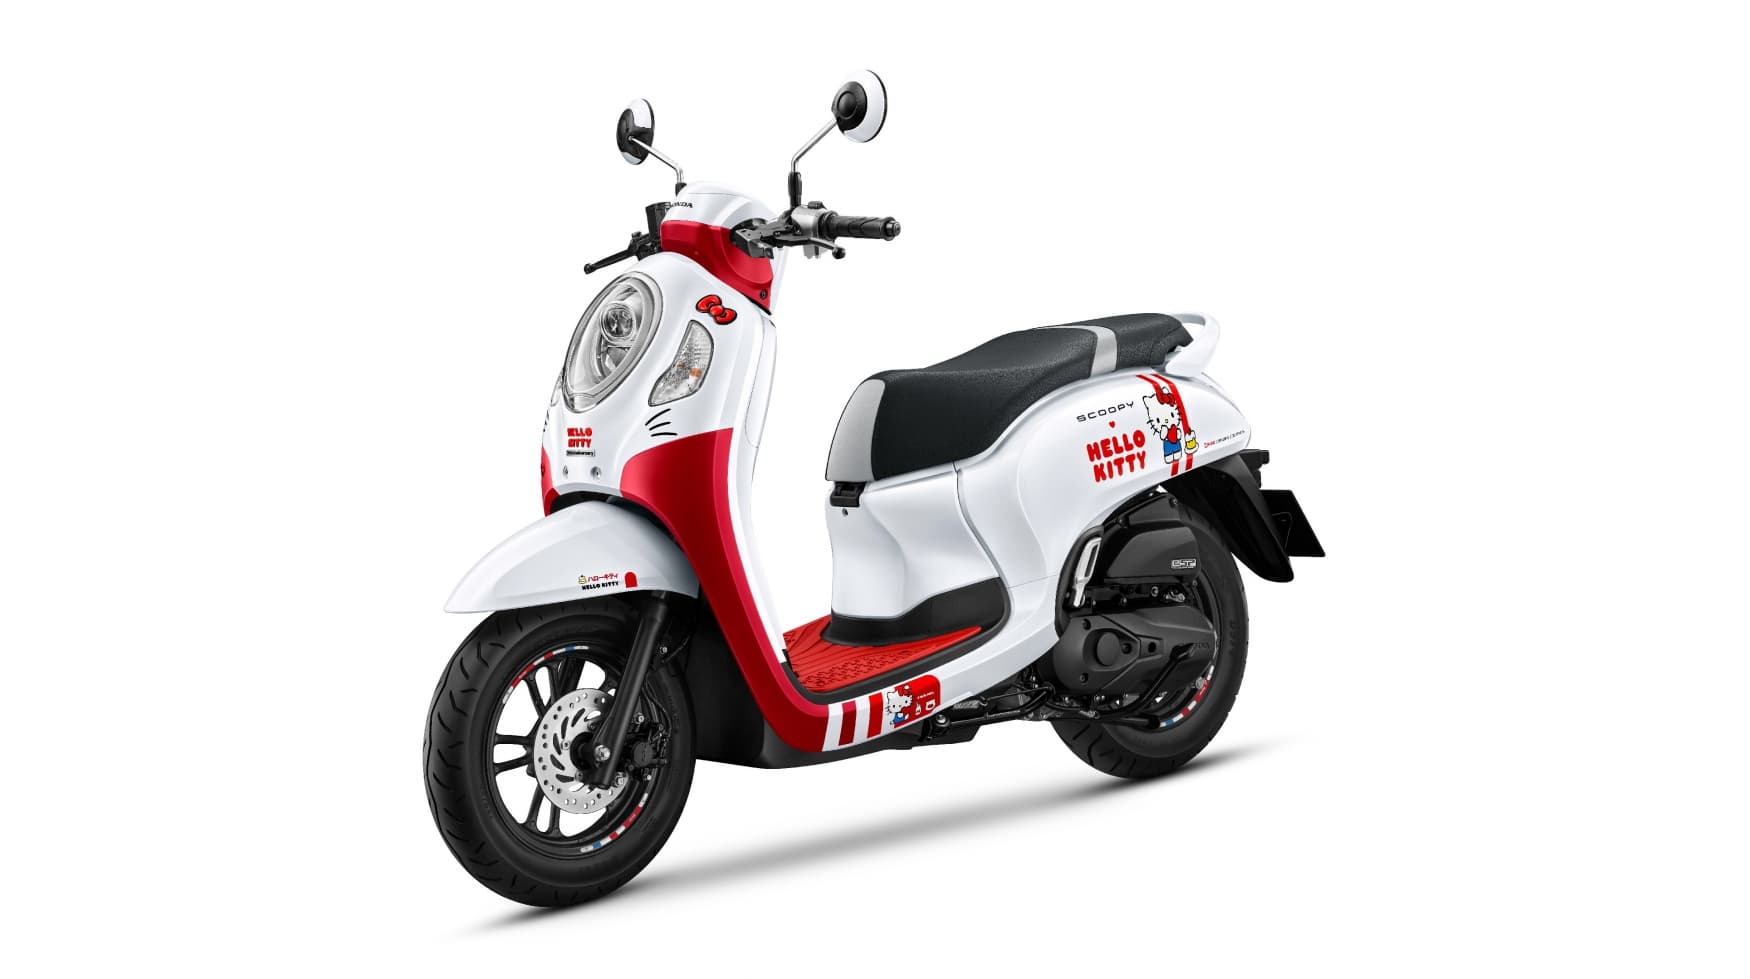 Spesifikasi Honda Scoopy Hello Kitty Edition yang Dijual Terbatas di Thailand, Desainnya Imut dan Sporty